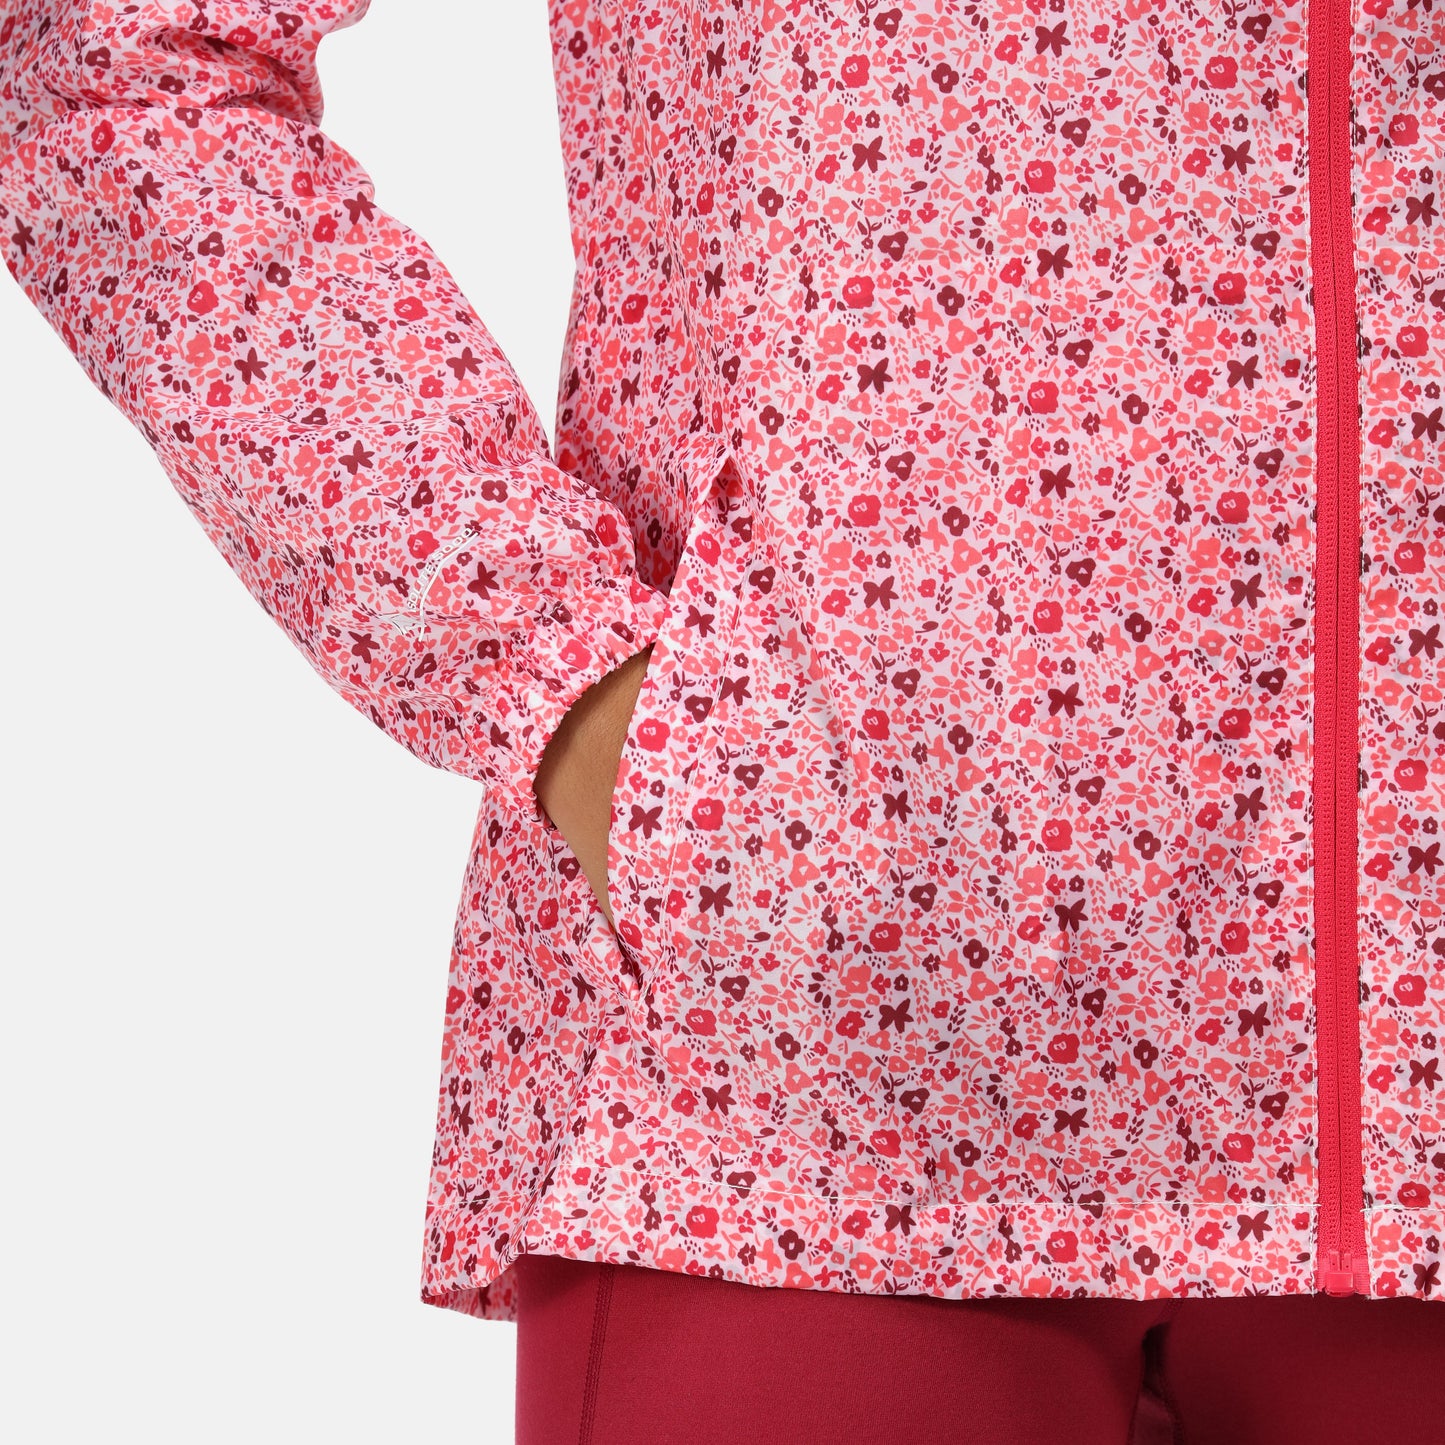 Women's Printed Pack-It Waterproof Jacket - Tropical Pink Ditsy